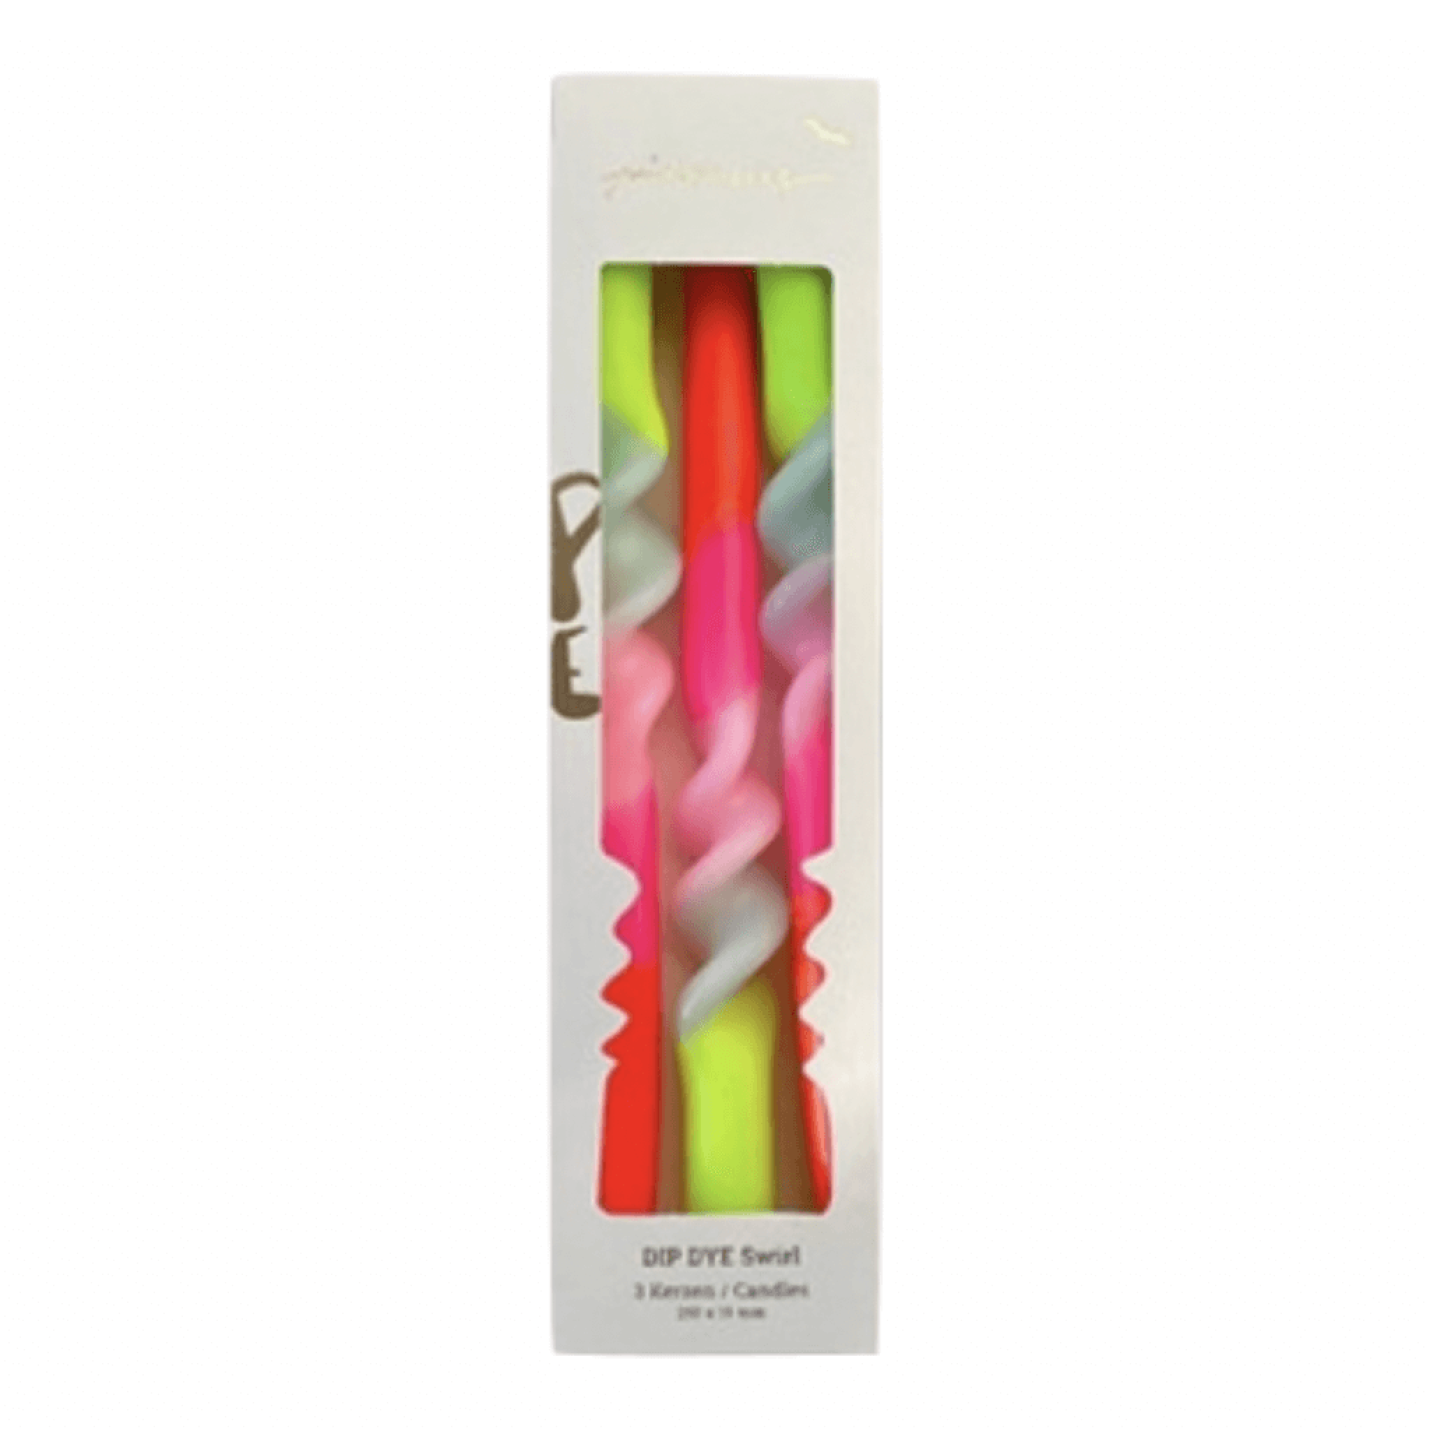 Dip Dye Swirl Lollipop Flowers kaarsen per 3 verpakt; Afbeelding: 2